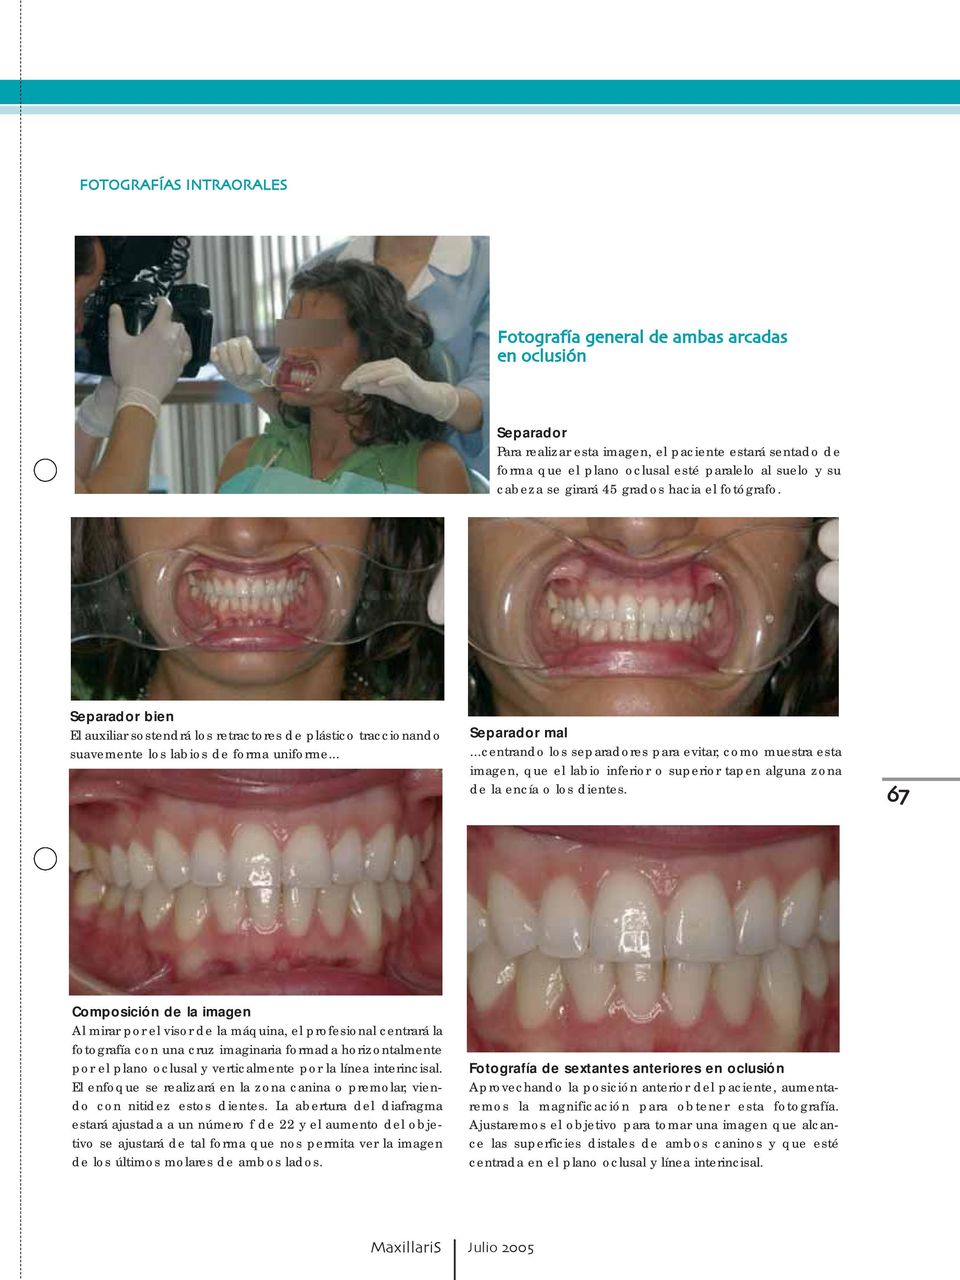 ..centrando los separadores para evitar, como muestra esta imagen, que el labio inferior o superior tapen alguna zona de la encía o los dientes.